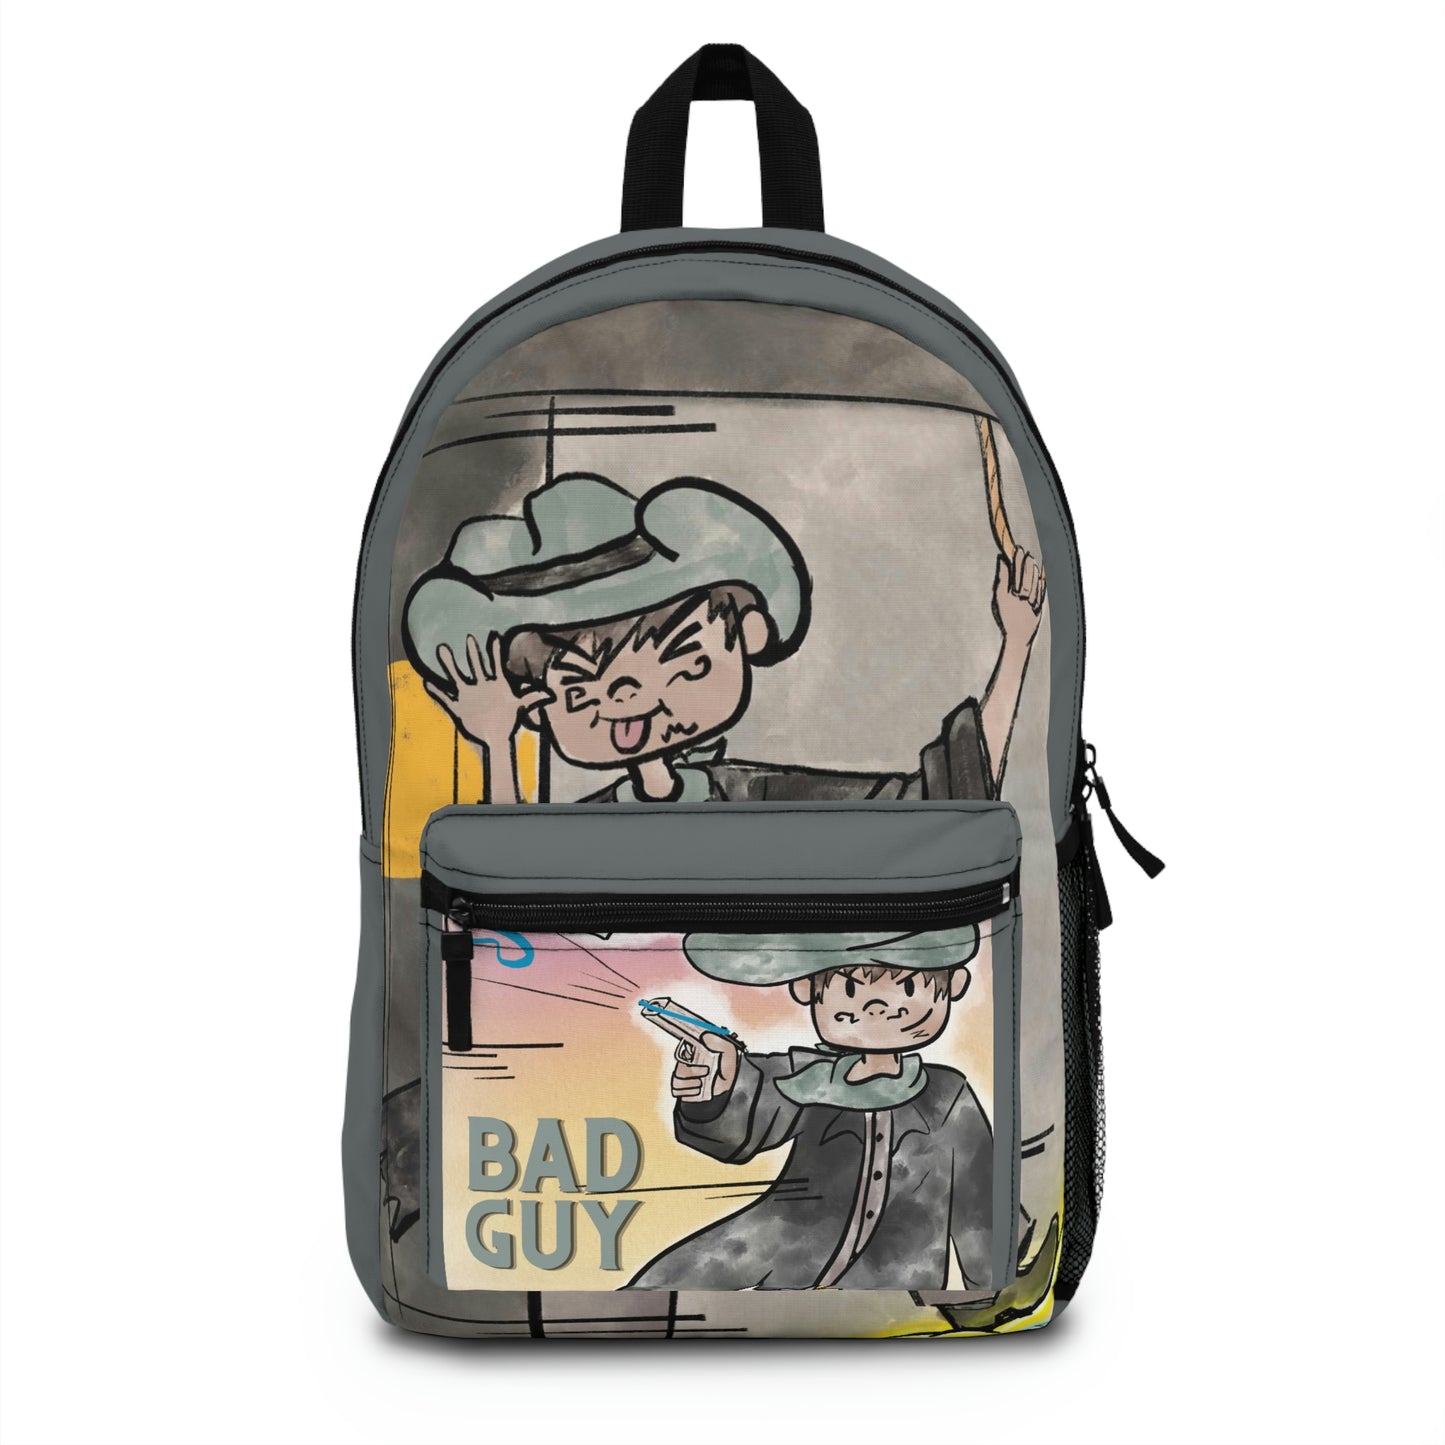 Bad Guy Backpack